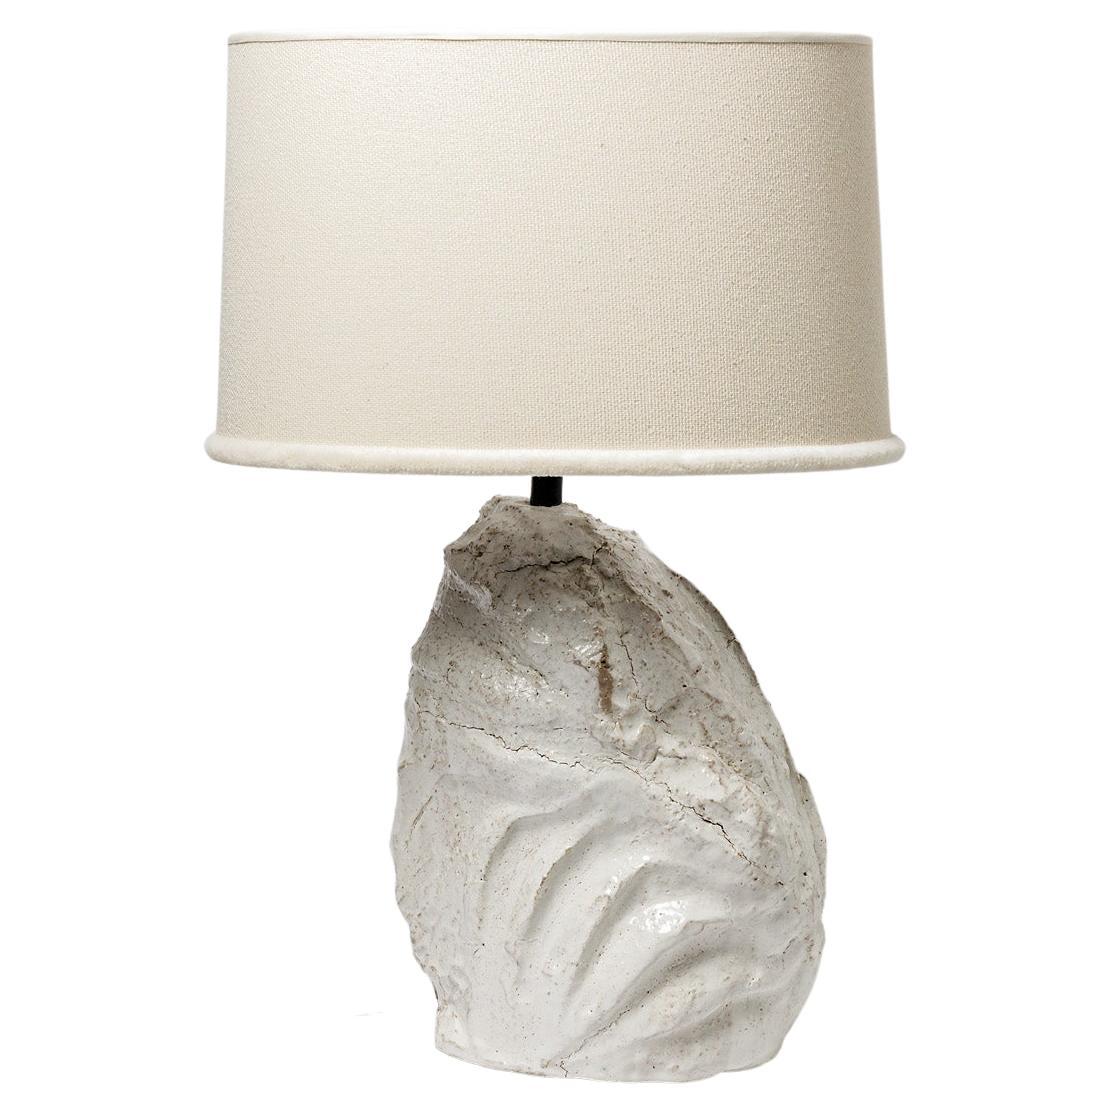 Tischlampe aus Keramik mit weißer Glasur von Hervé Rousseau, 2022 / REF 7